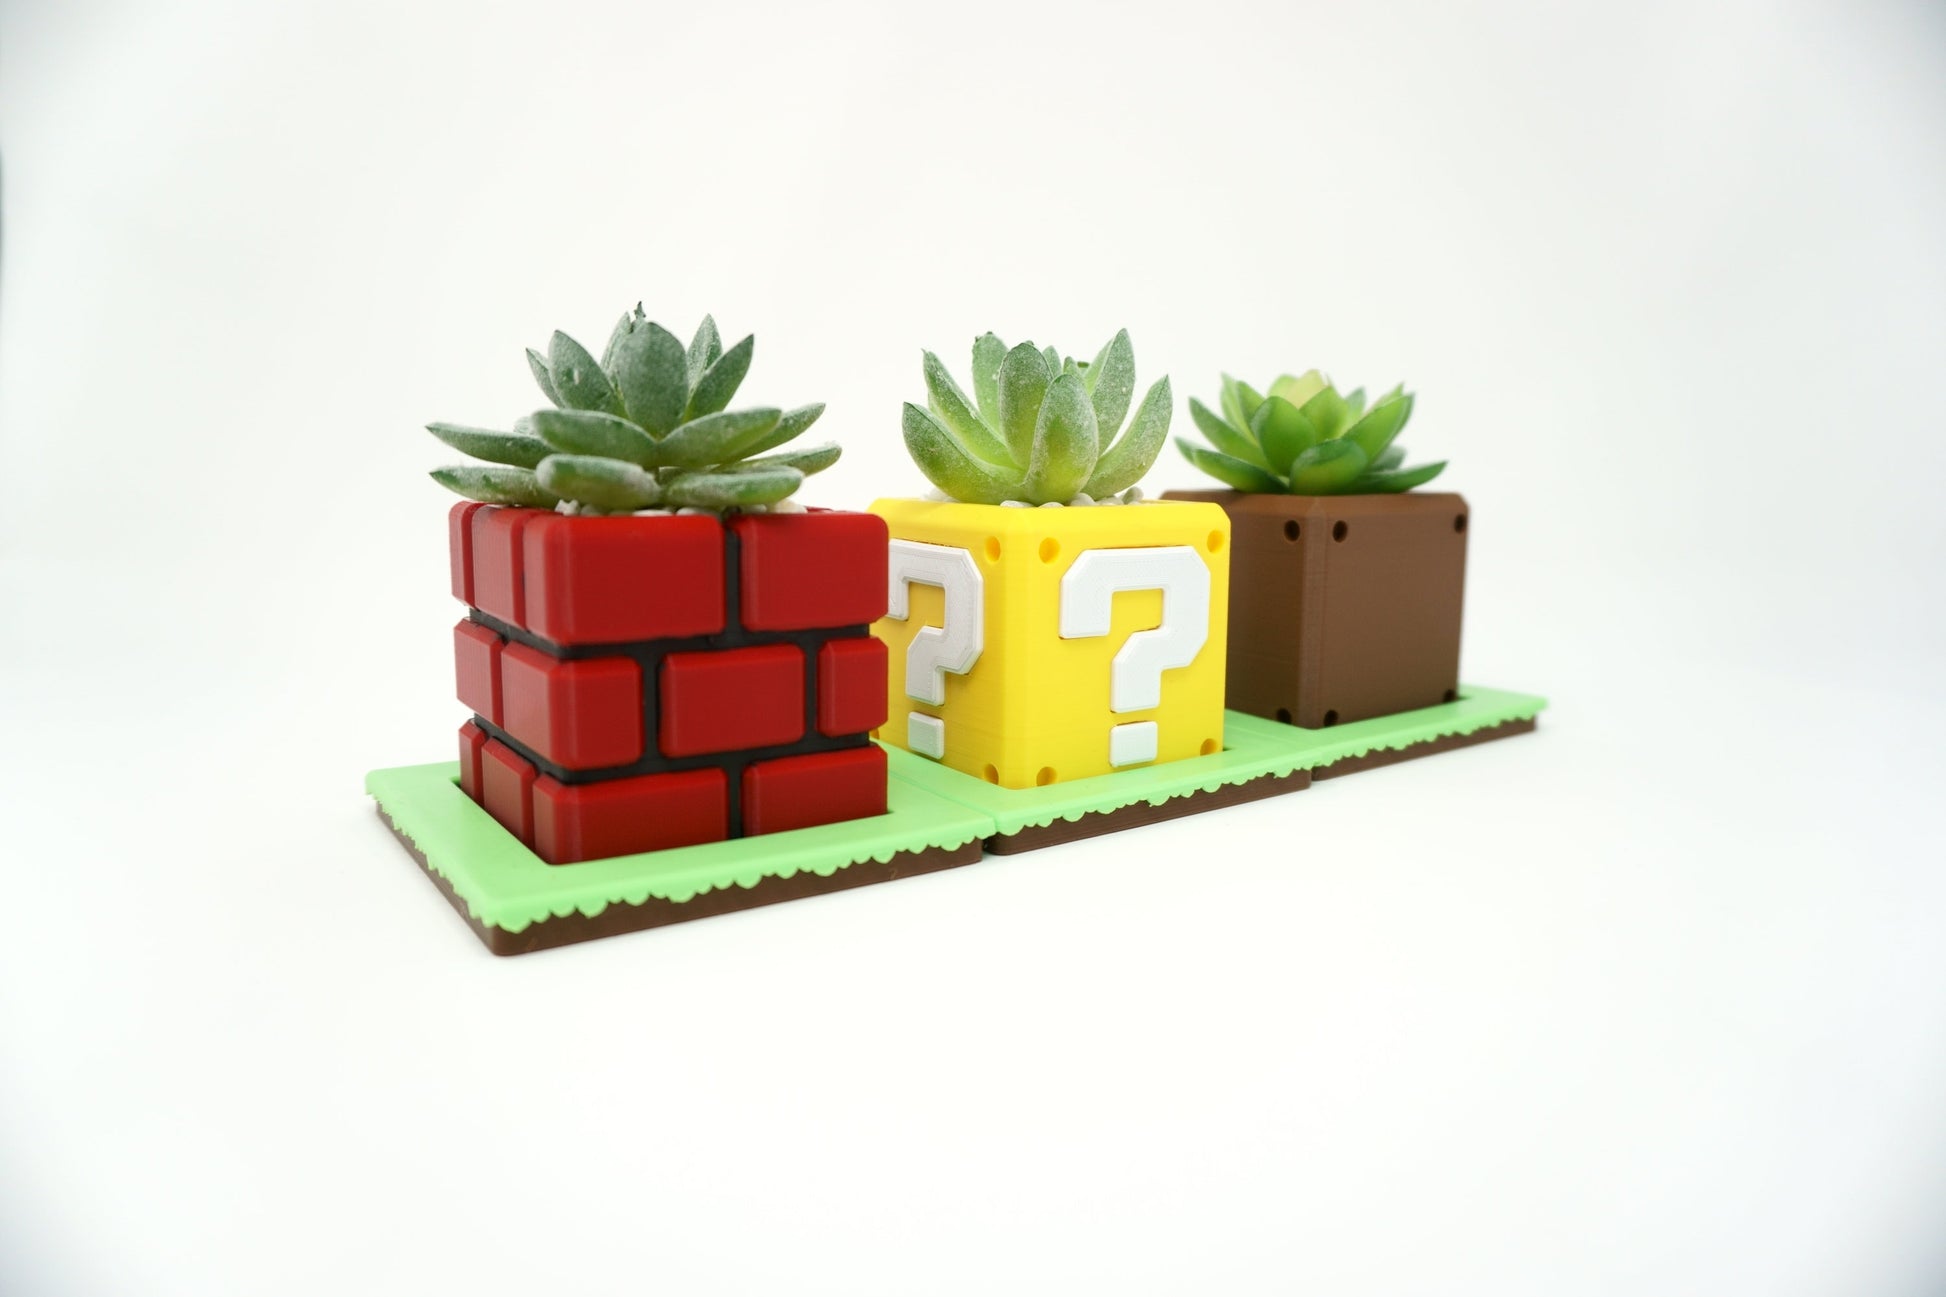 Super Mario Bros Brick Block Planter| Flower Pot | Super Mario Planter | Office Decor | Home Decor